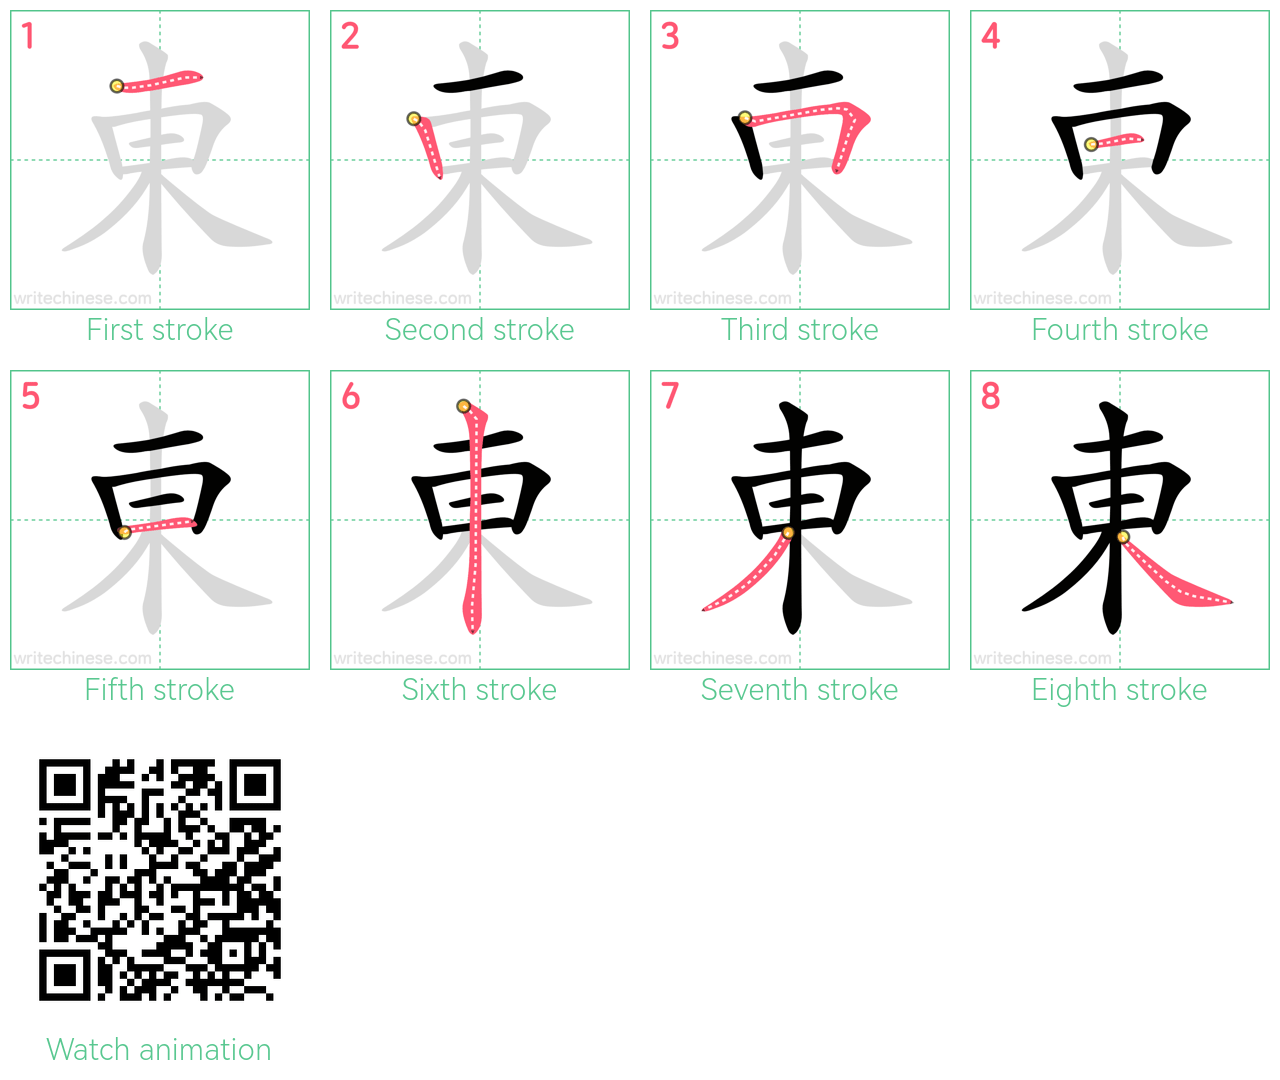 東 step-by-step stroke order diagrams